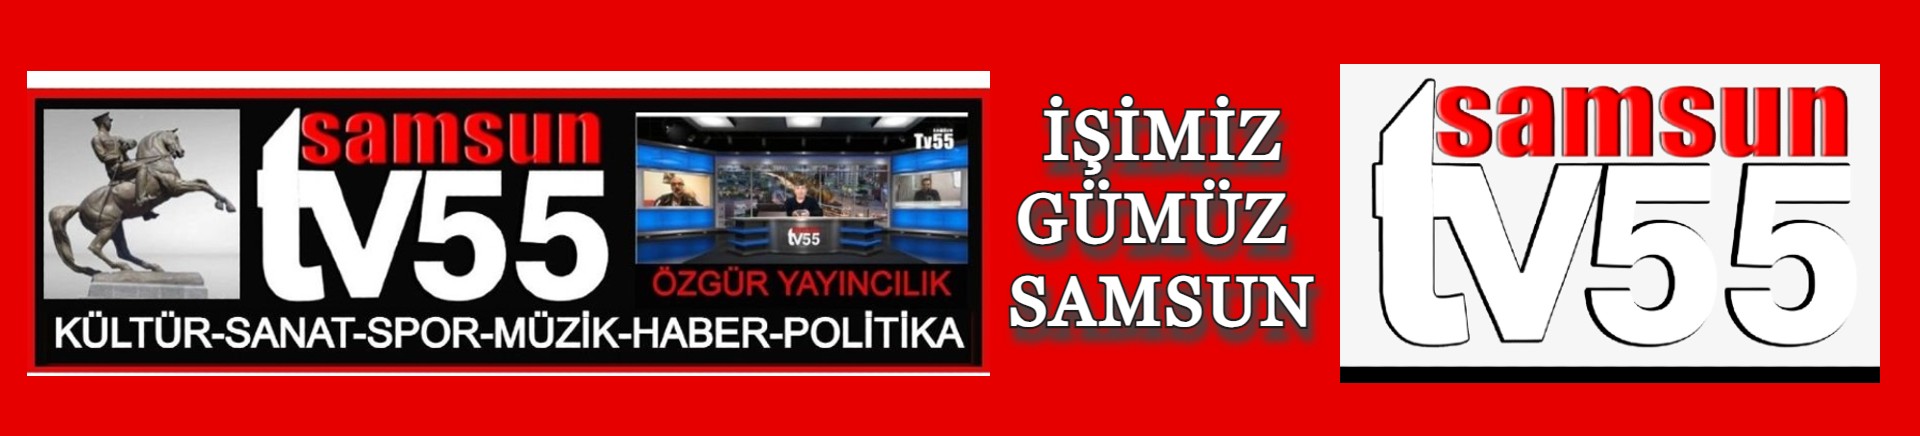 SAMSUN TV55